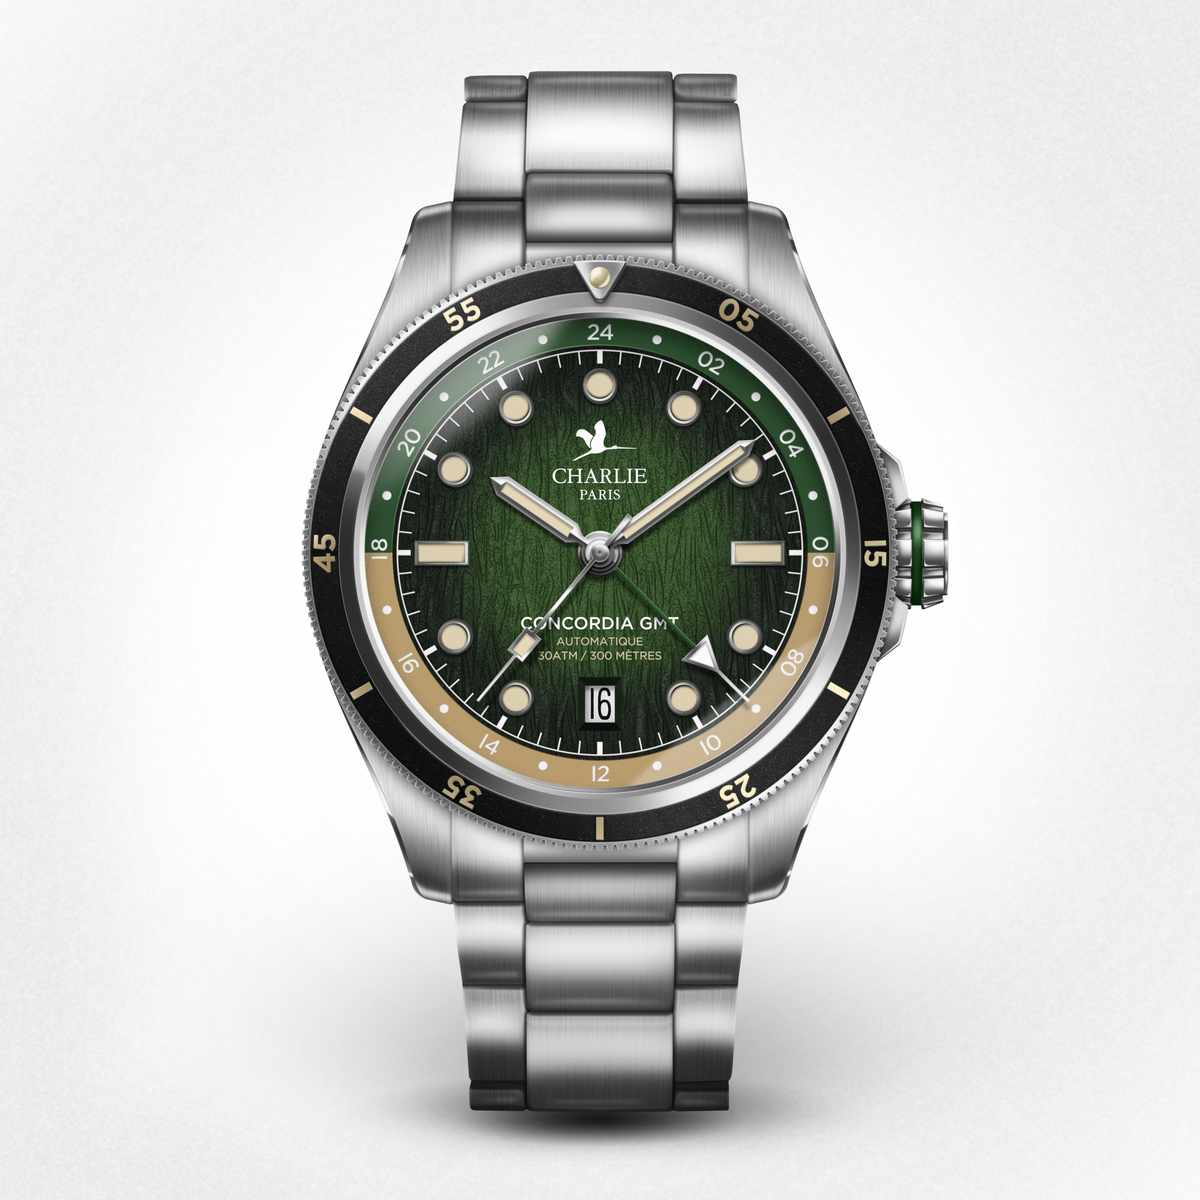 CONCORDIA - Automatic GMT - Latitude 0° - Steel bracelet